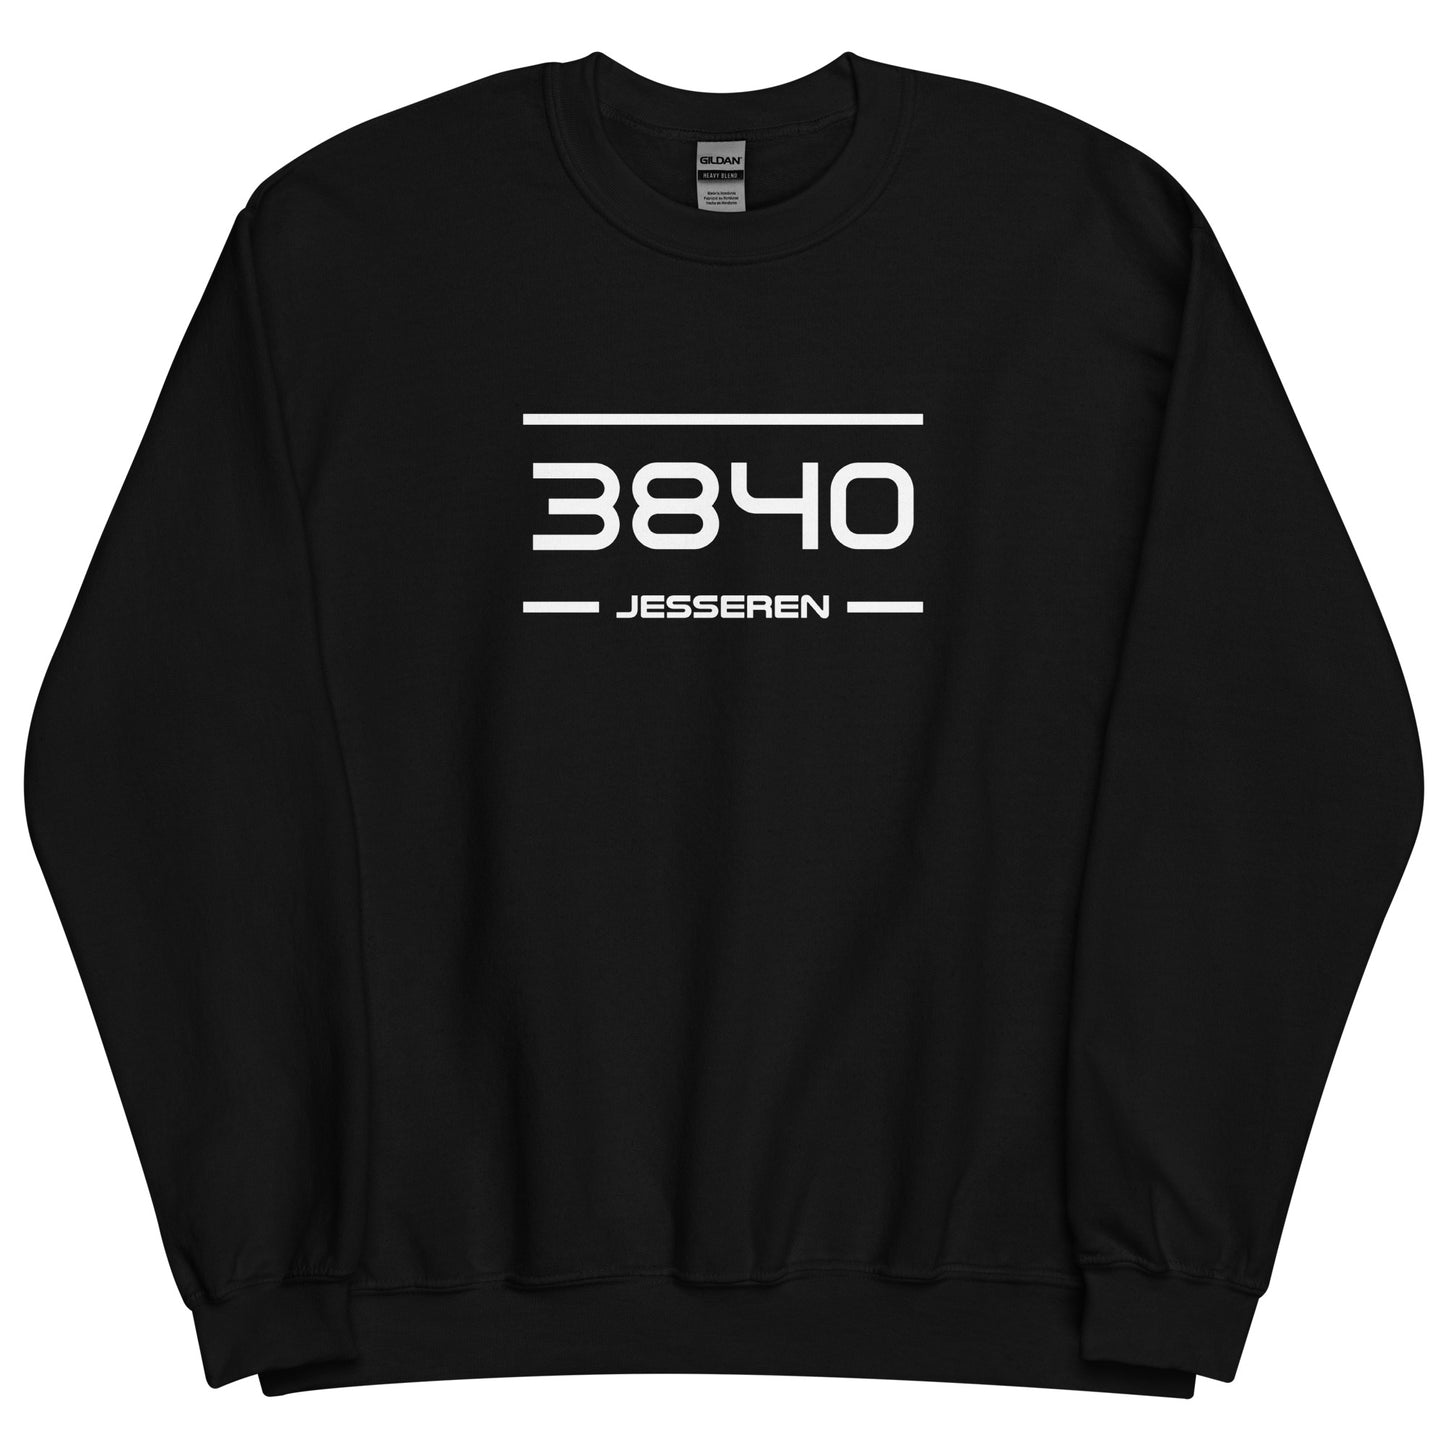 Sweater - 3840 - Jesseren (M/V)